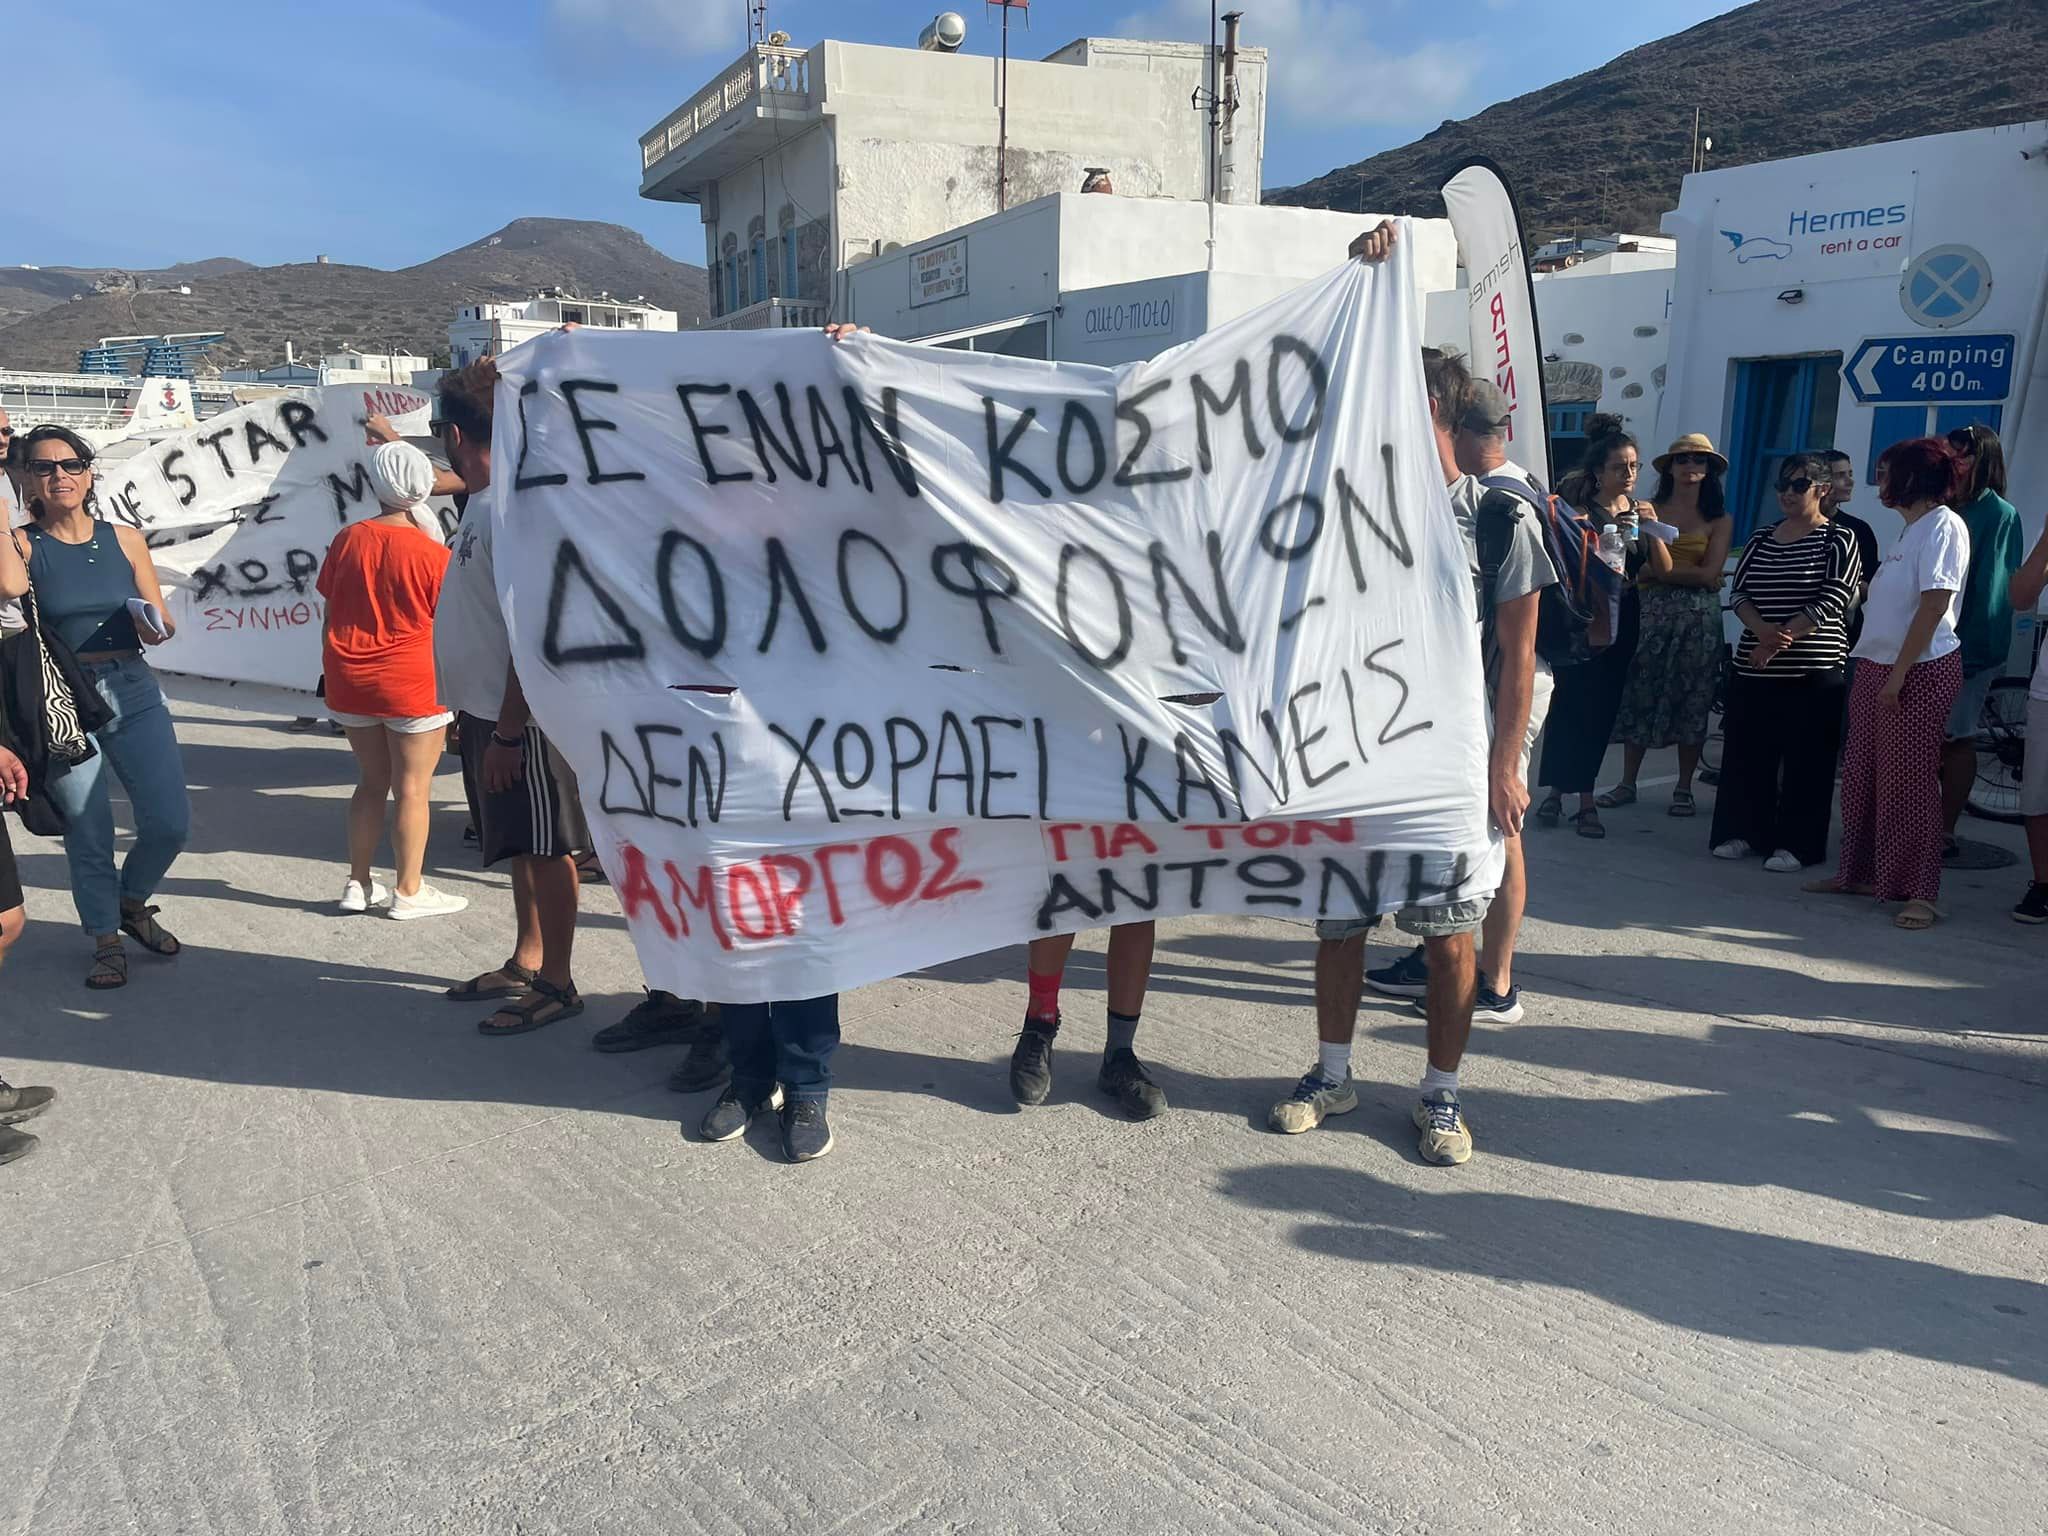 Συγκέντρωση διαμαρτυρίας για τον Αντώνη στην Αμοργό - Με πανό και συνθήματα